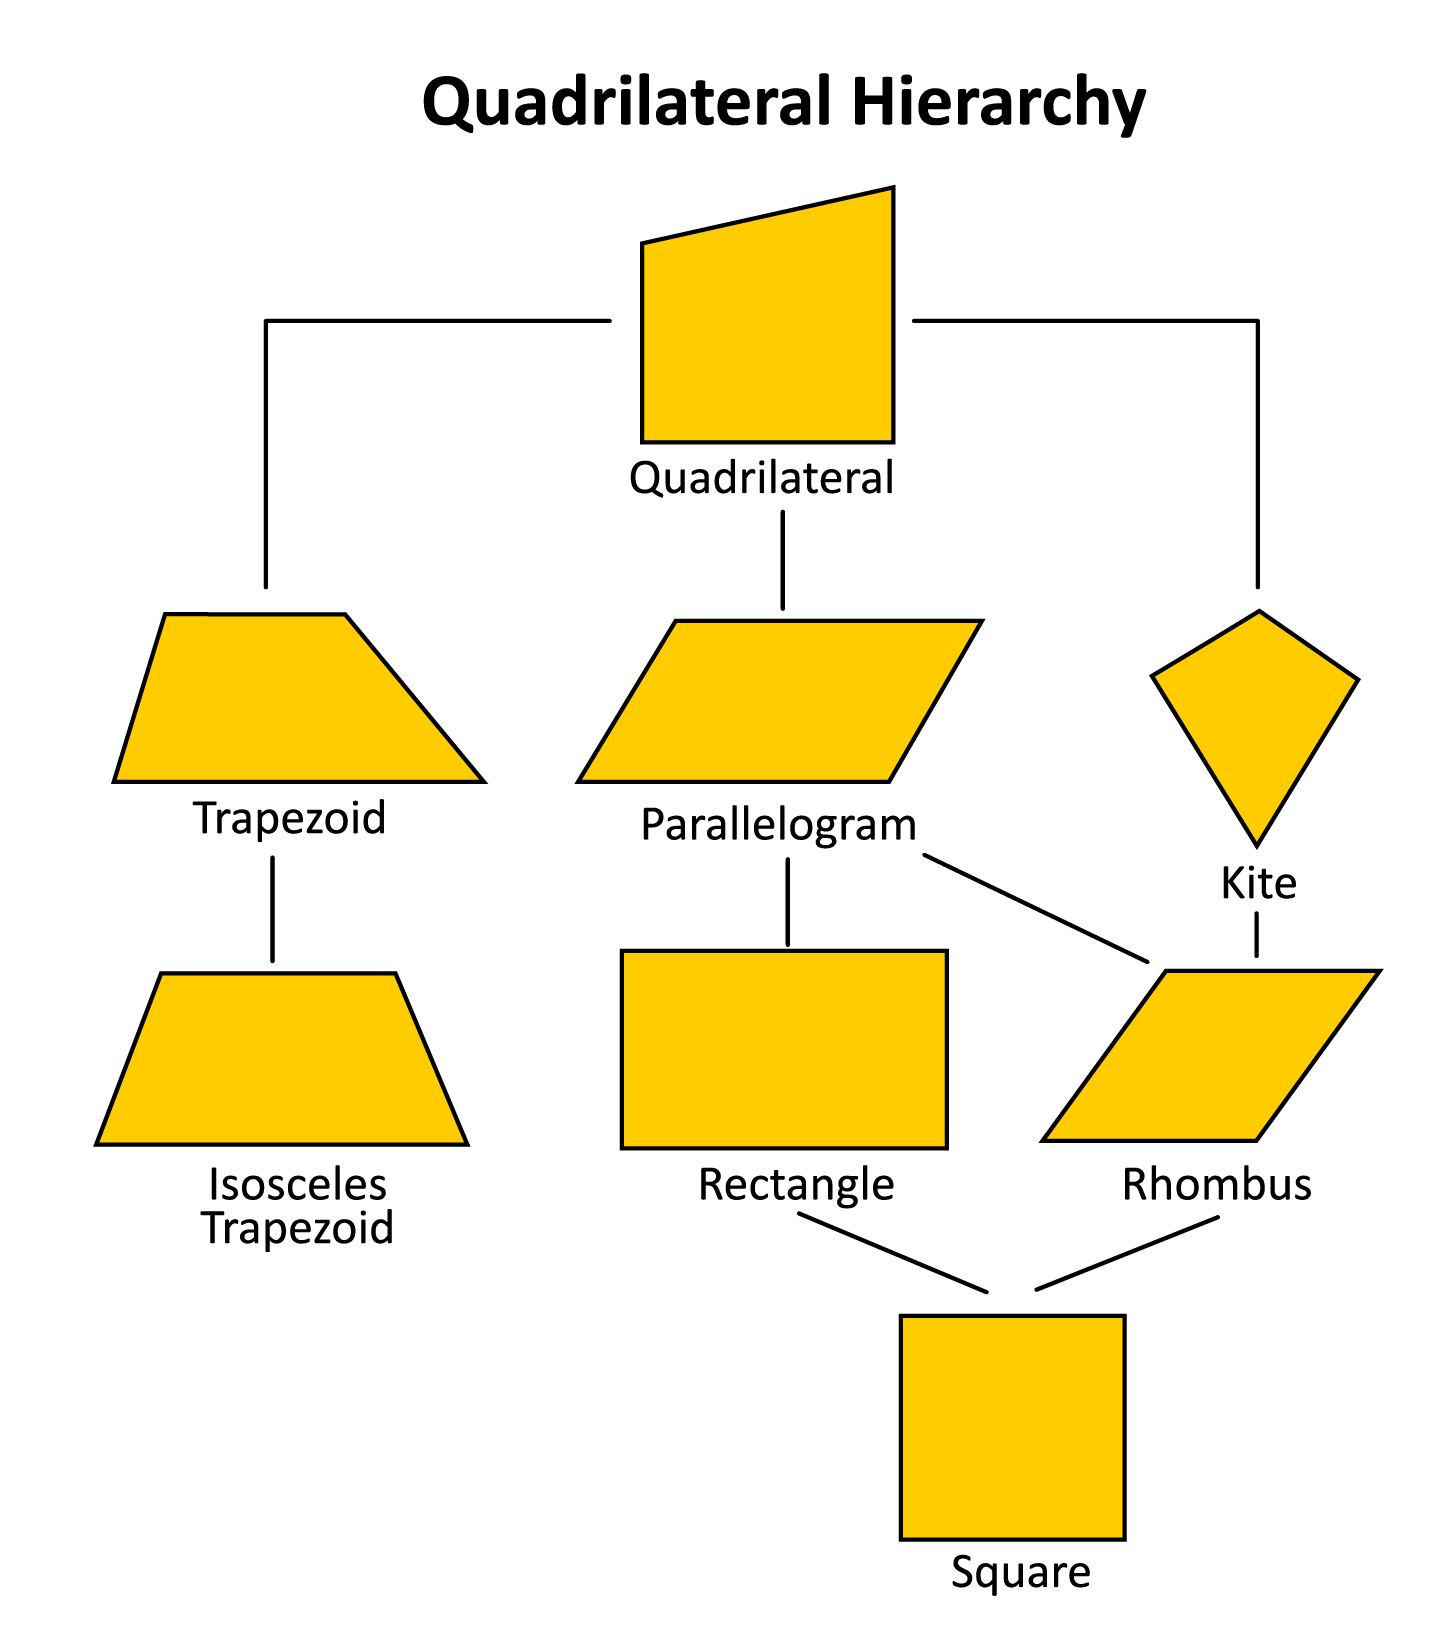 Classifying Quadrilaterals